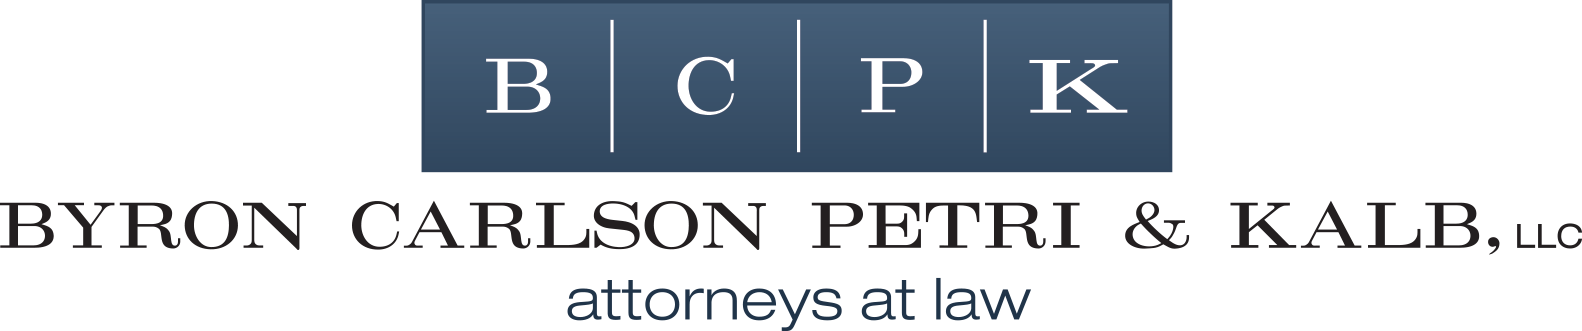 Byron Carlson Petri & Kalb, LLC | attorneys at law